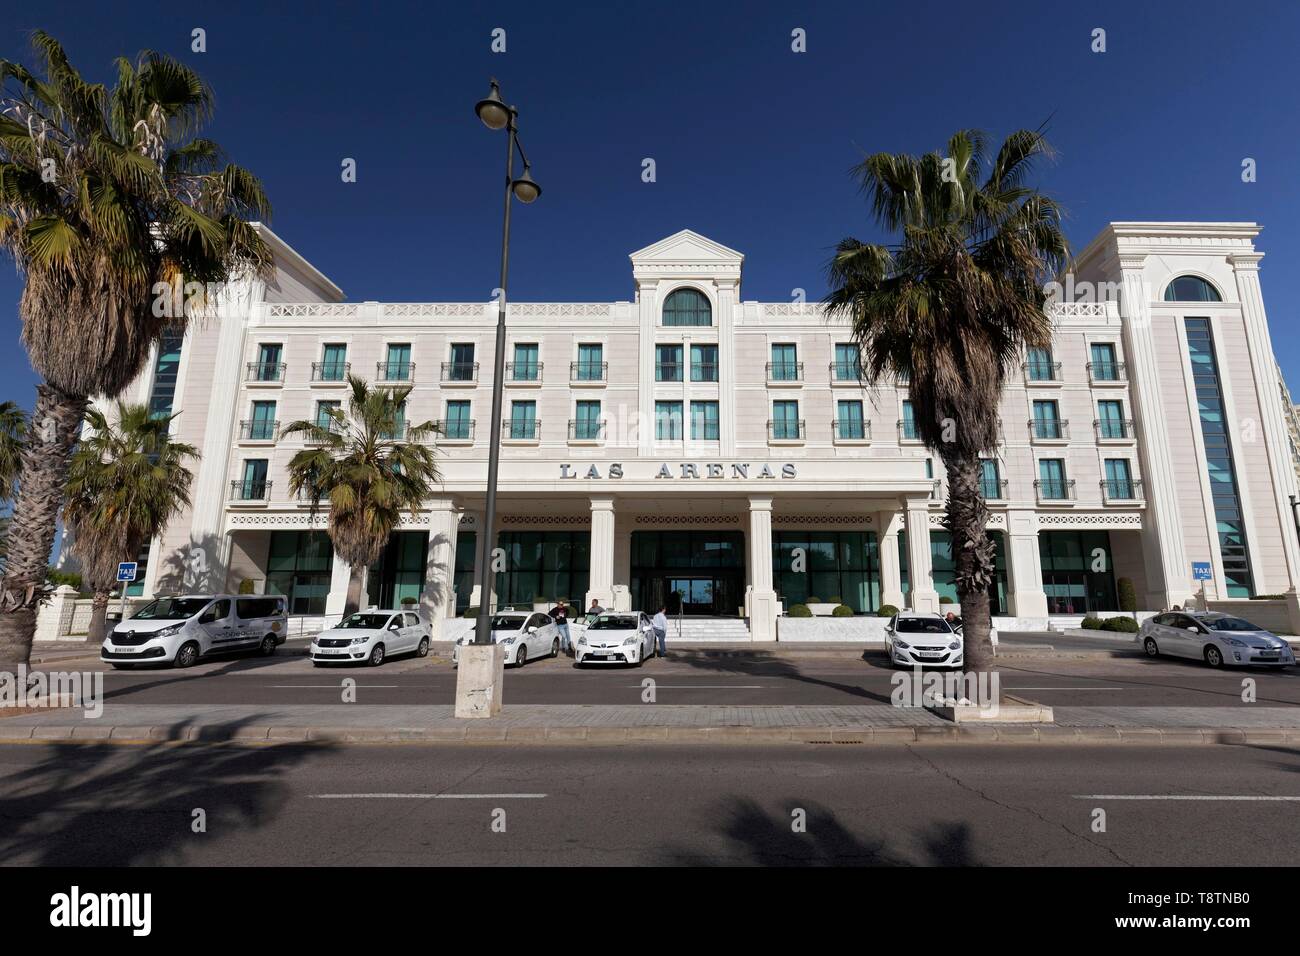 Balneario Las Arenas, hôtel 5 étoiles, plage de Cabanyal, Valencia, Espagne Banque D'Images